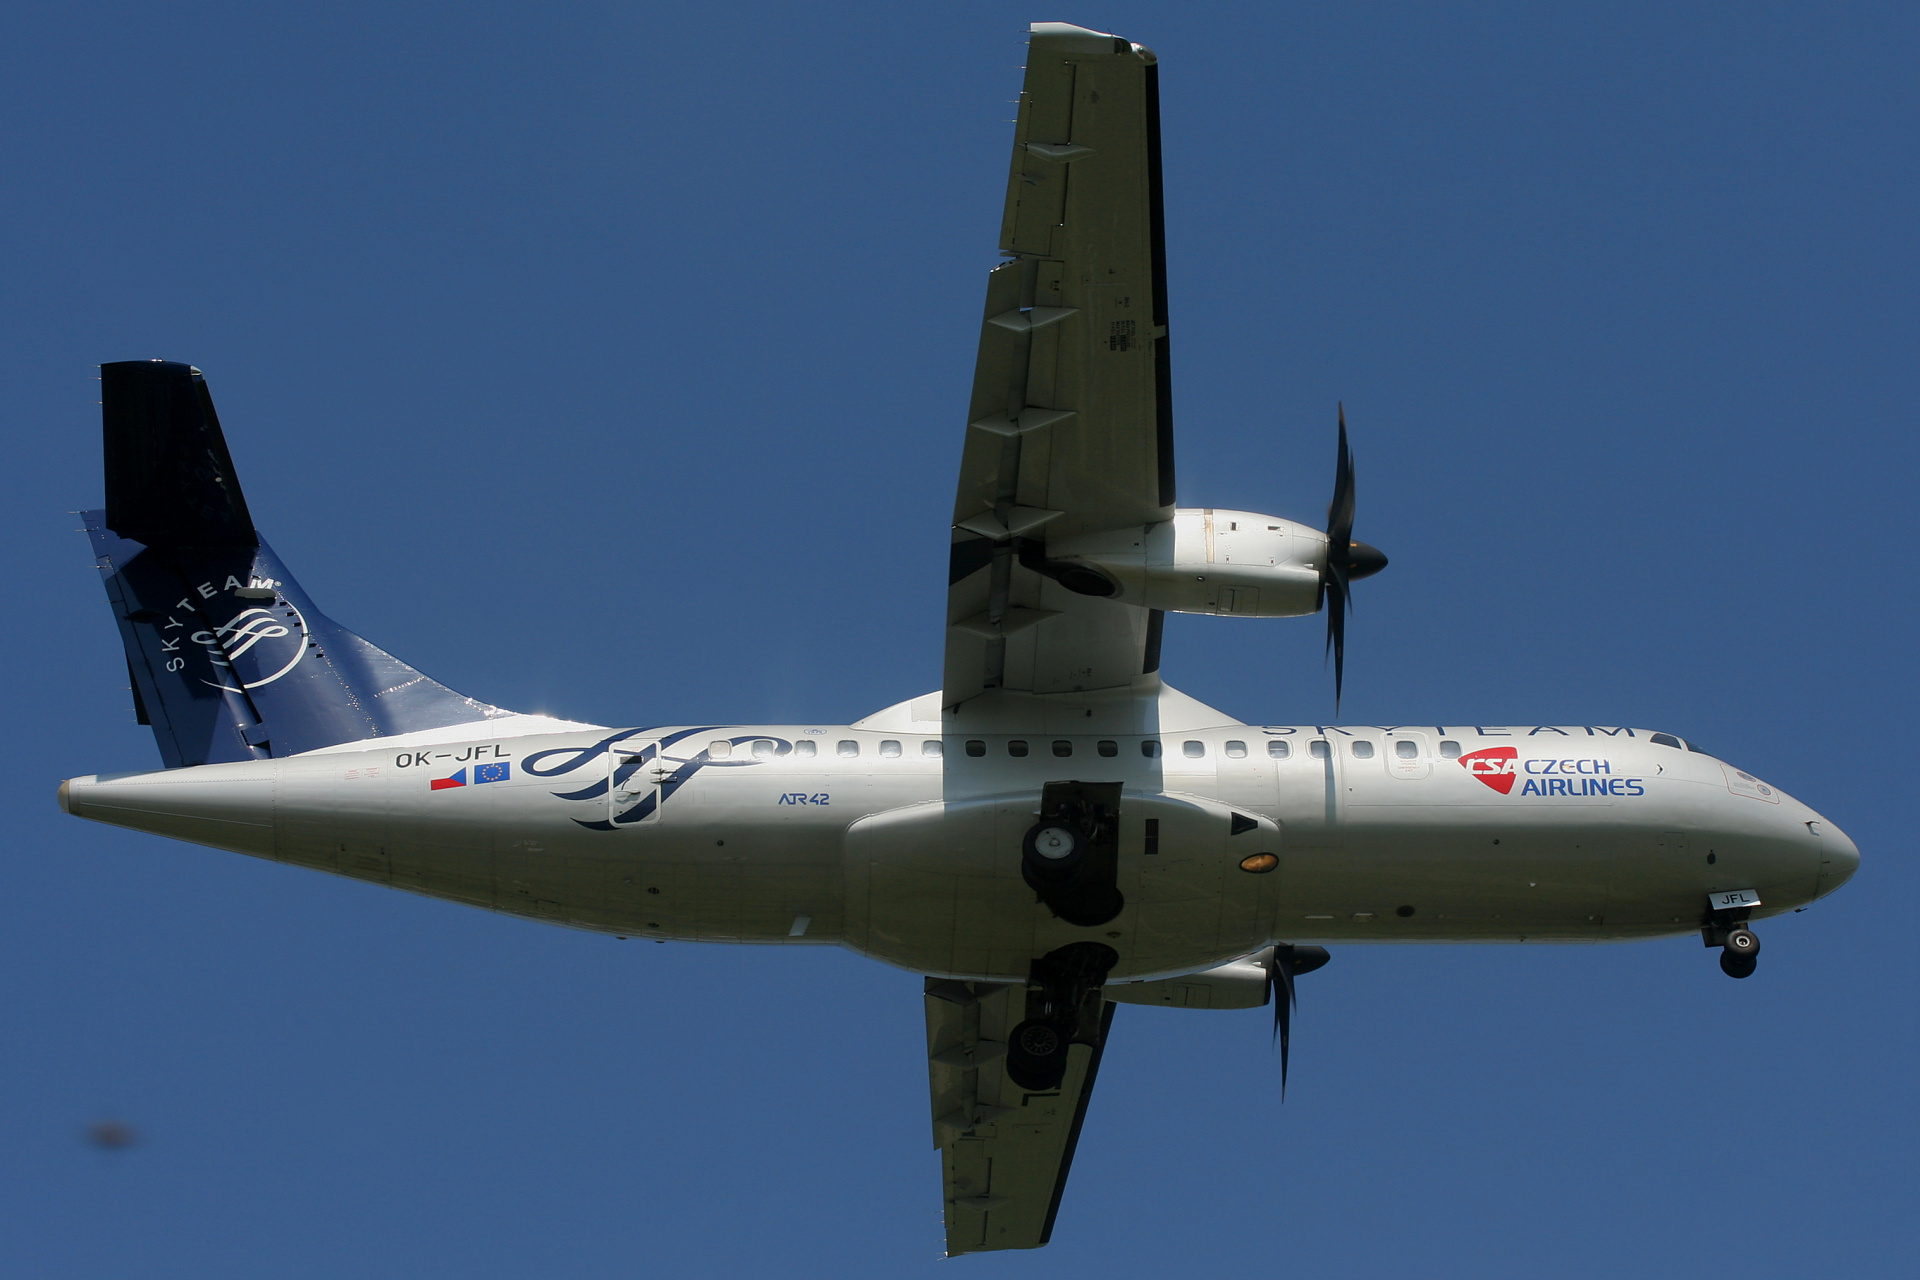 OK-JFL (malowanie SkyTeam) (Samoloty » Spotting na EPWA » ATR 42 » CSA Czech Airlines)